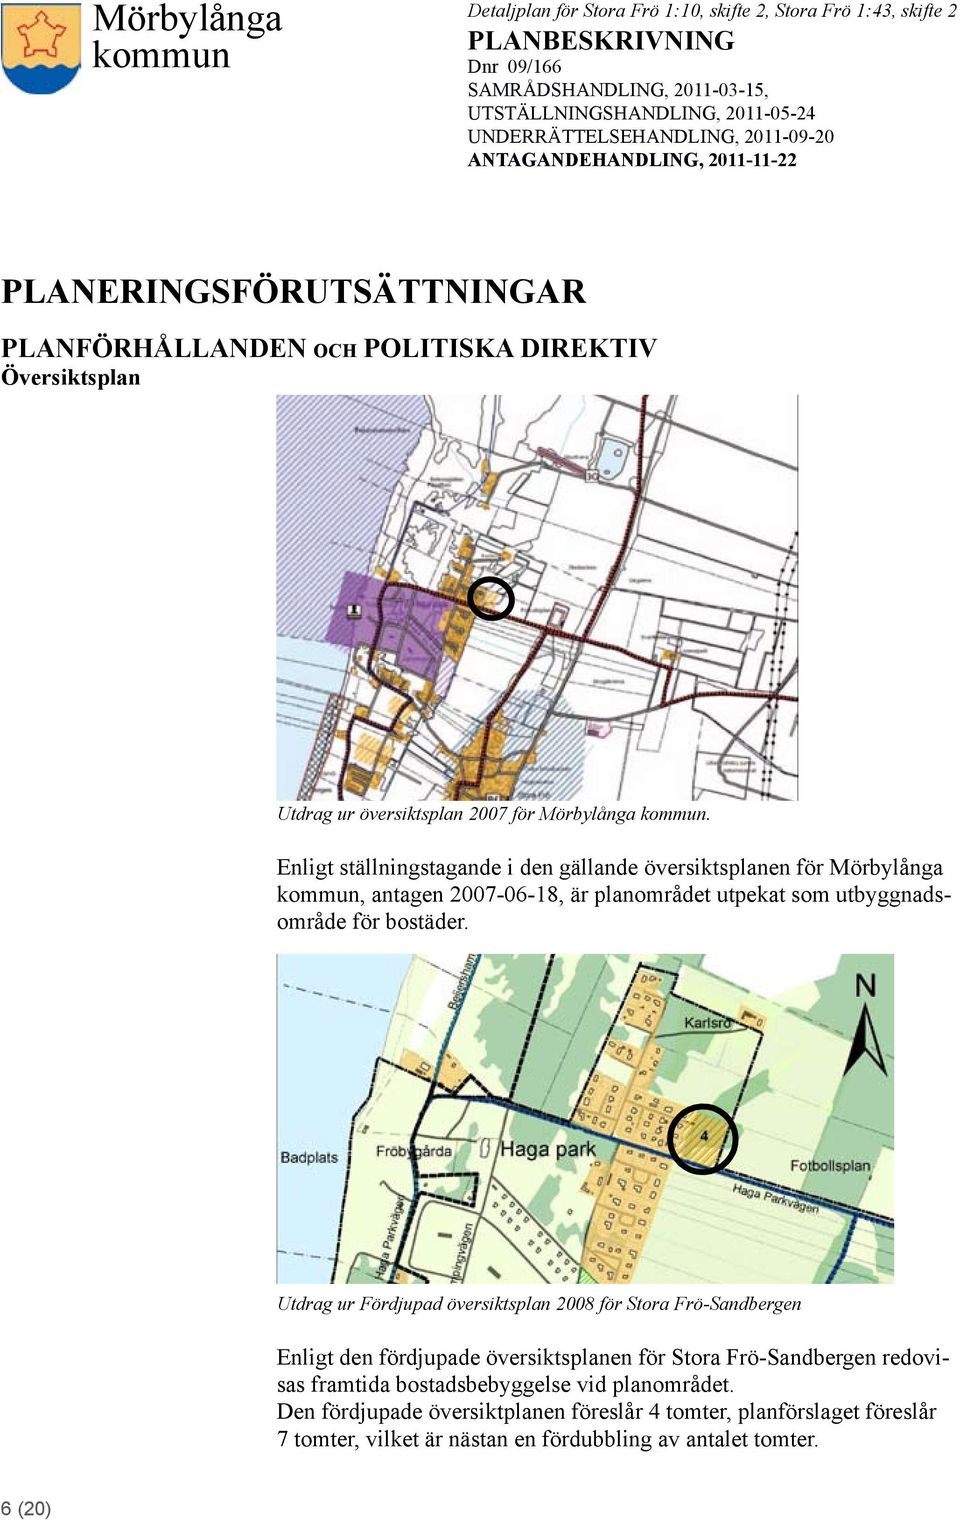 Utdrag ur Fördjupad översiktsplan 2008 för Stora Frö-Sandbergen Enligt den fördjupade översiktsplanen för Stora Frö-Sandbergen redovisas framtida